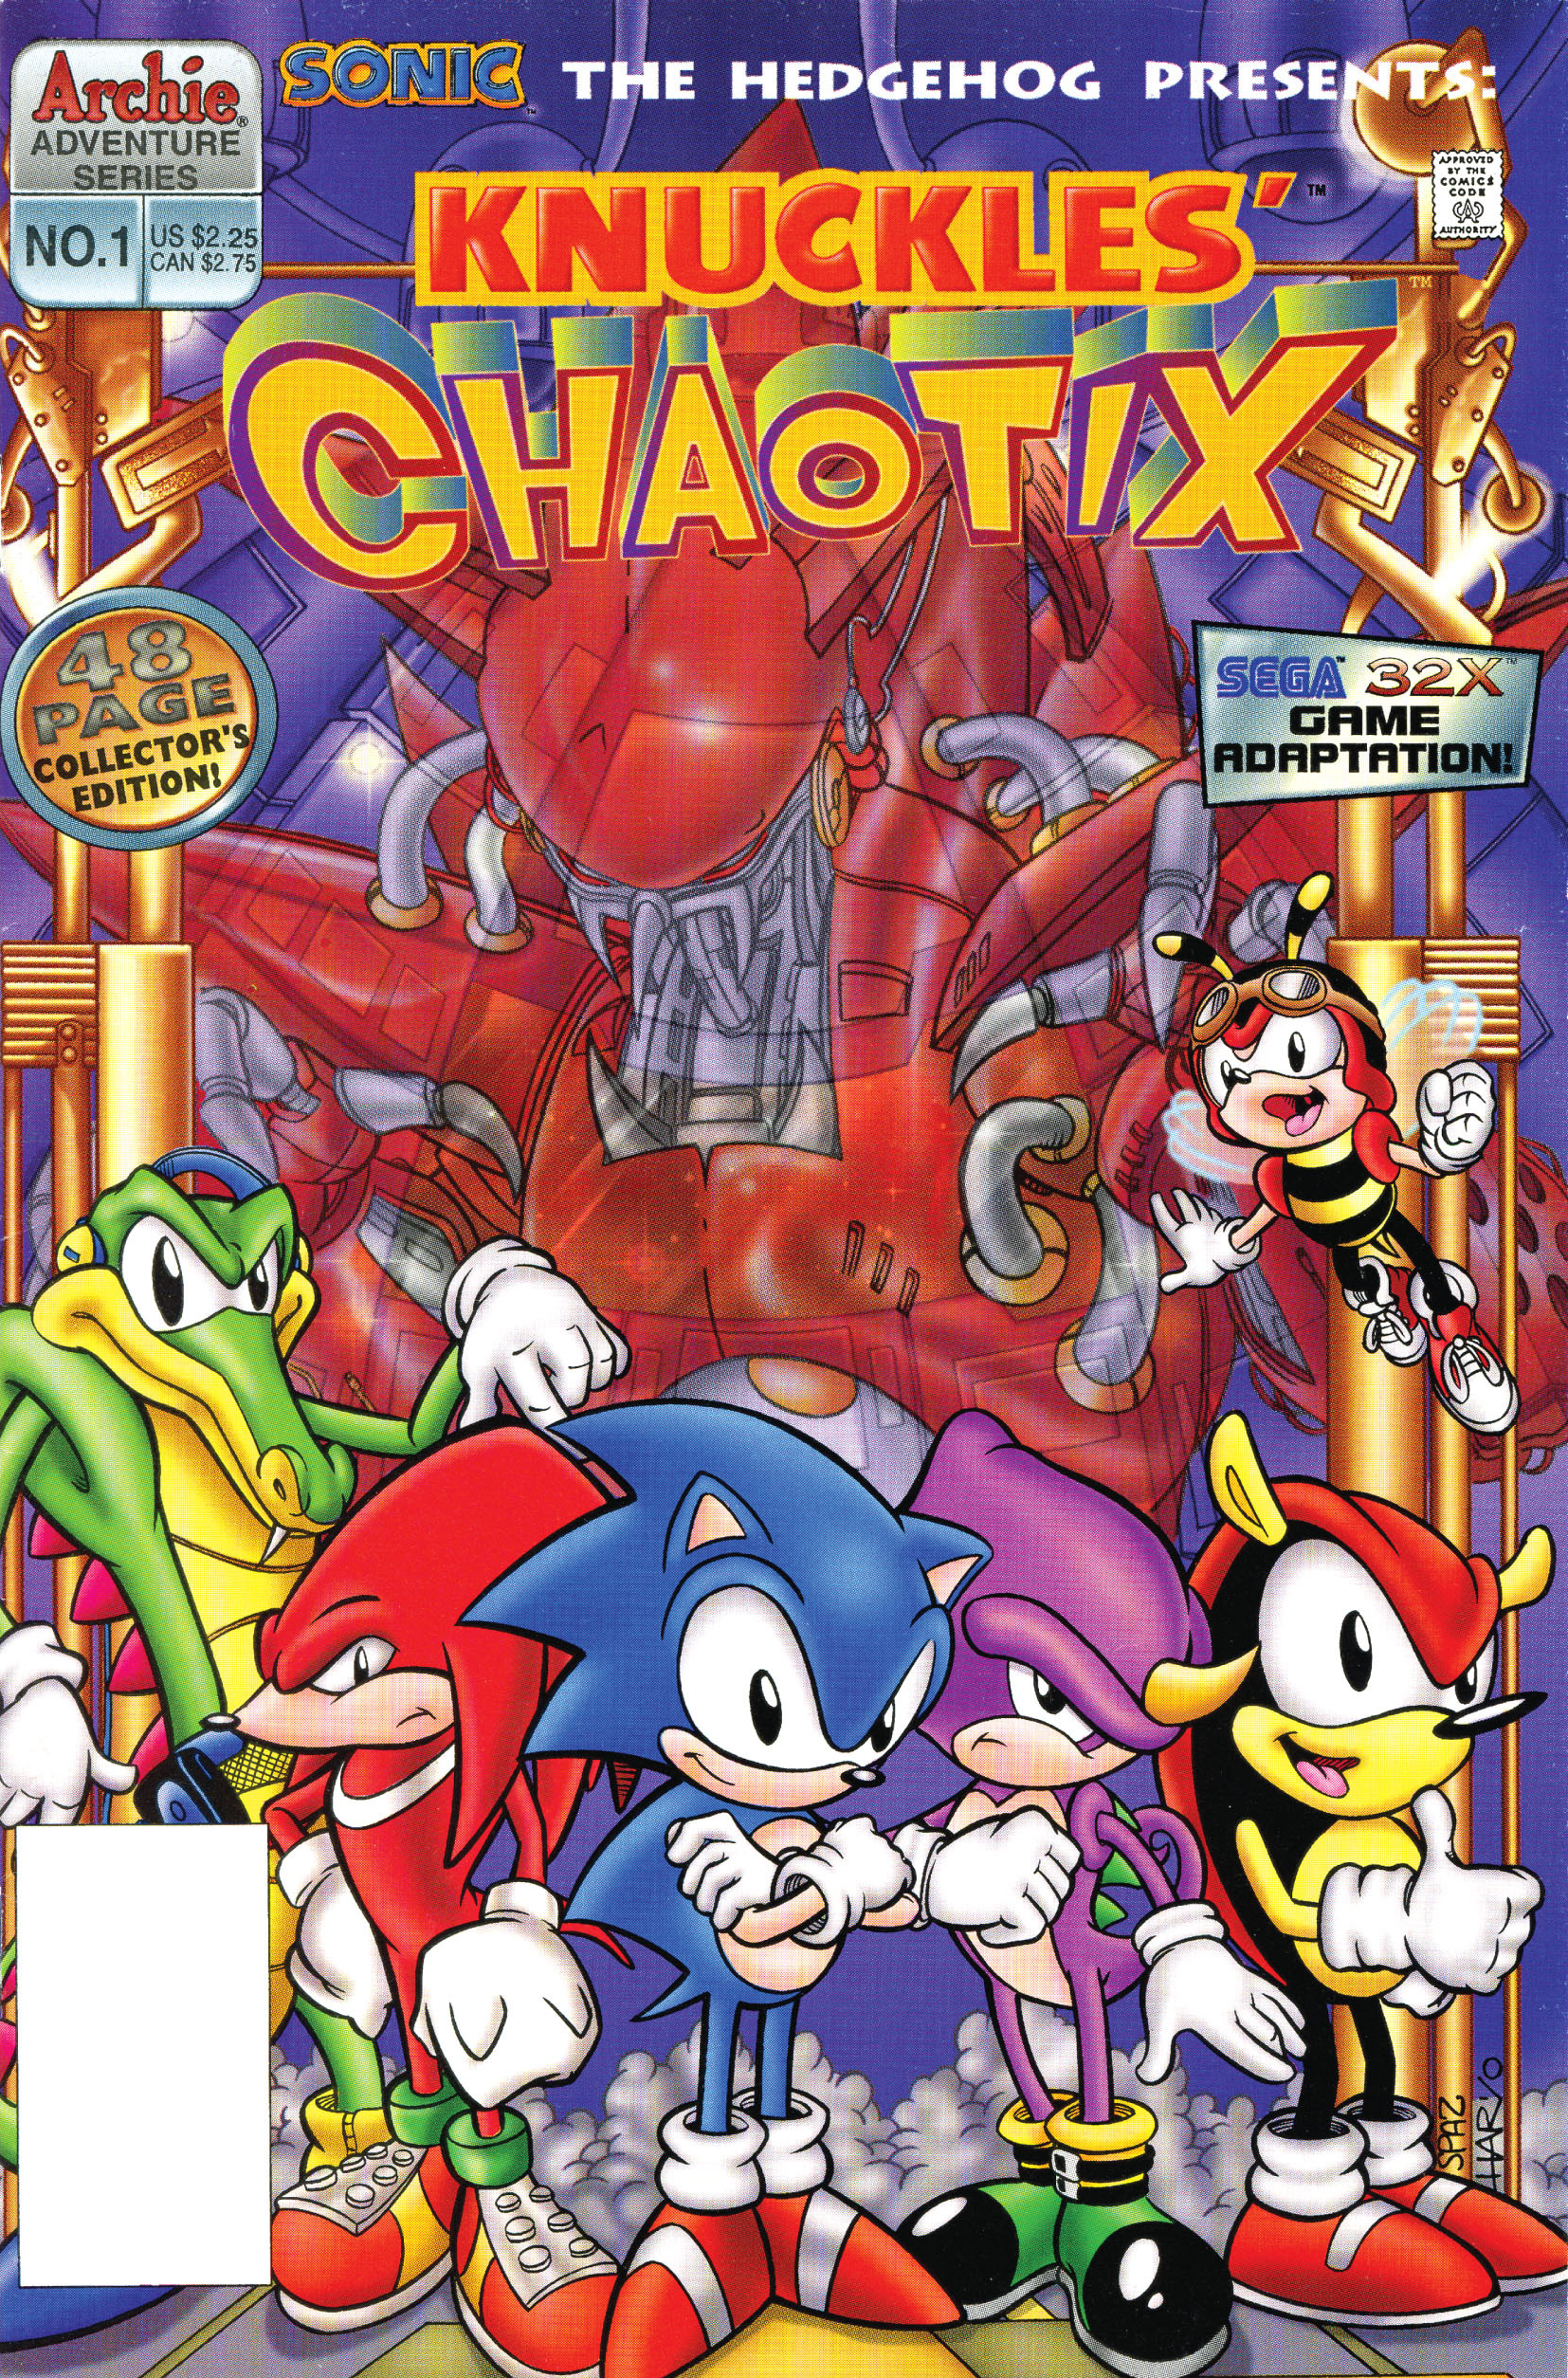 Archie Comics' Sonic Universe Chaotix Quest: Parts 1-2 (lost